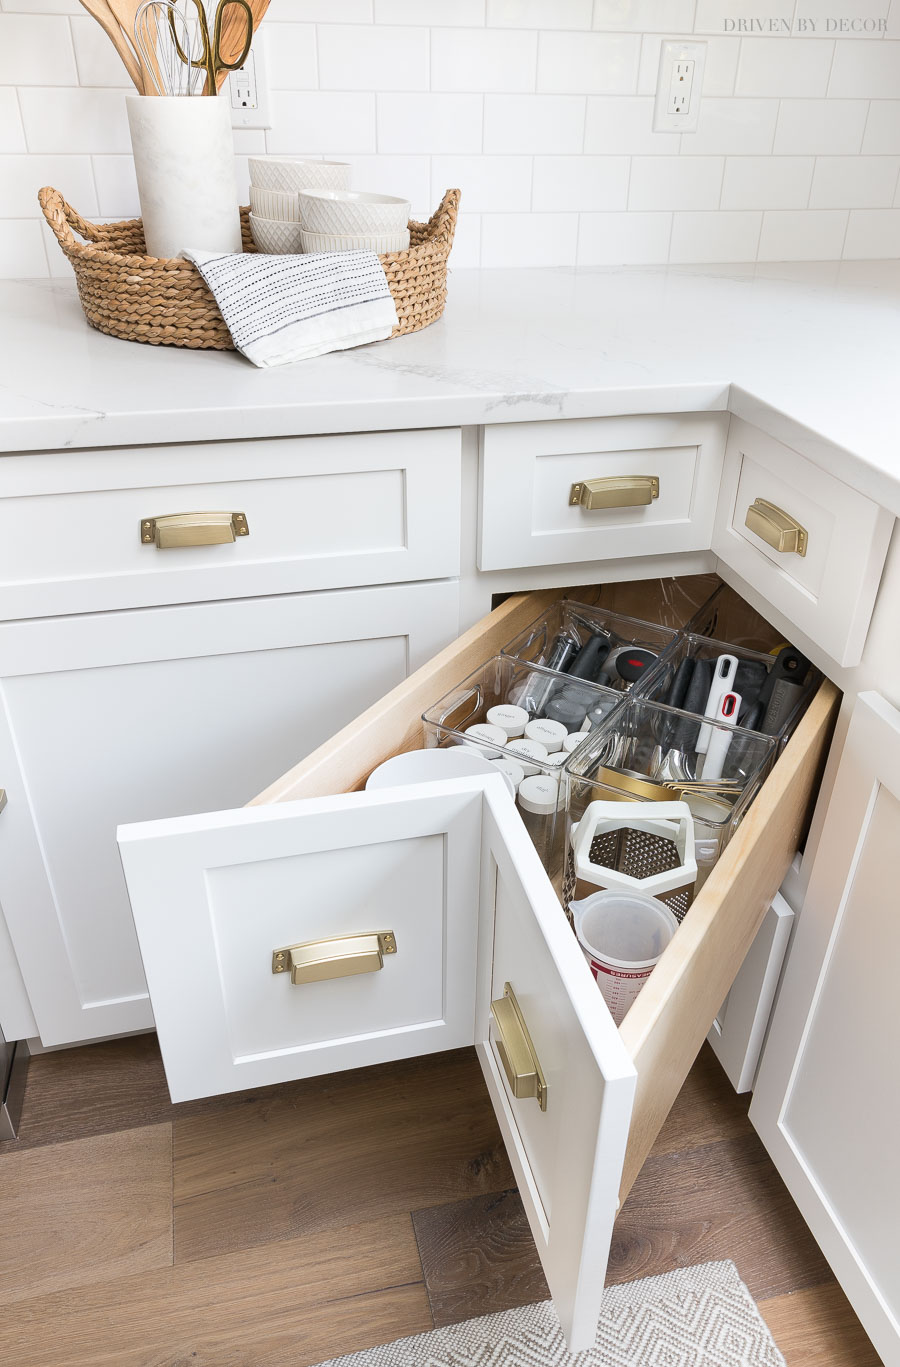 Kitchen Cabinet Storage Ideas   Driven by Decor